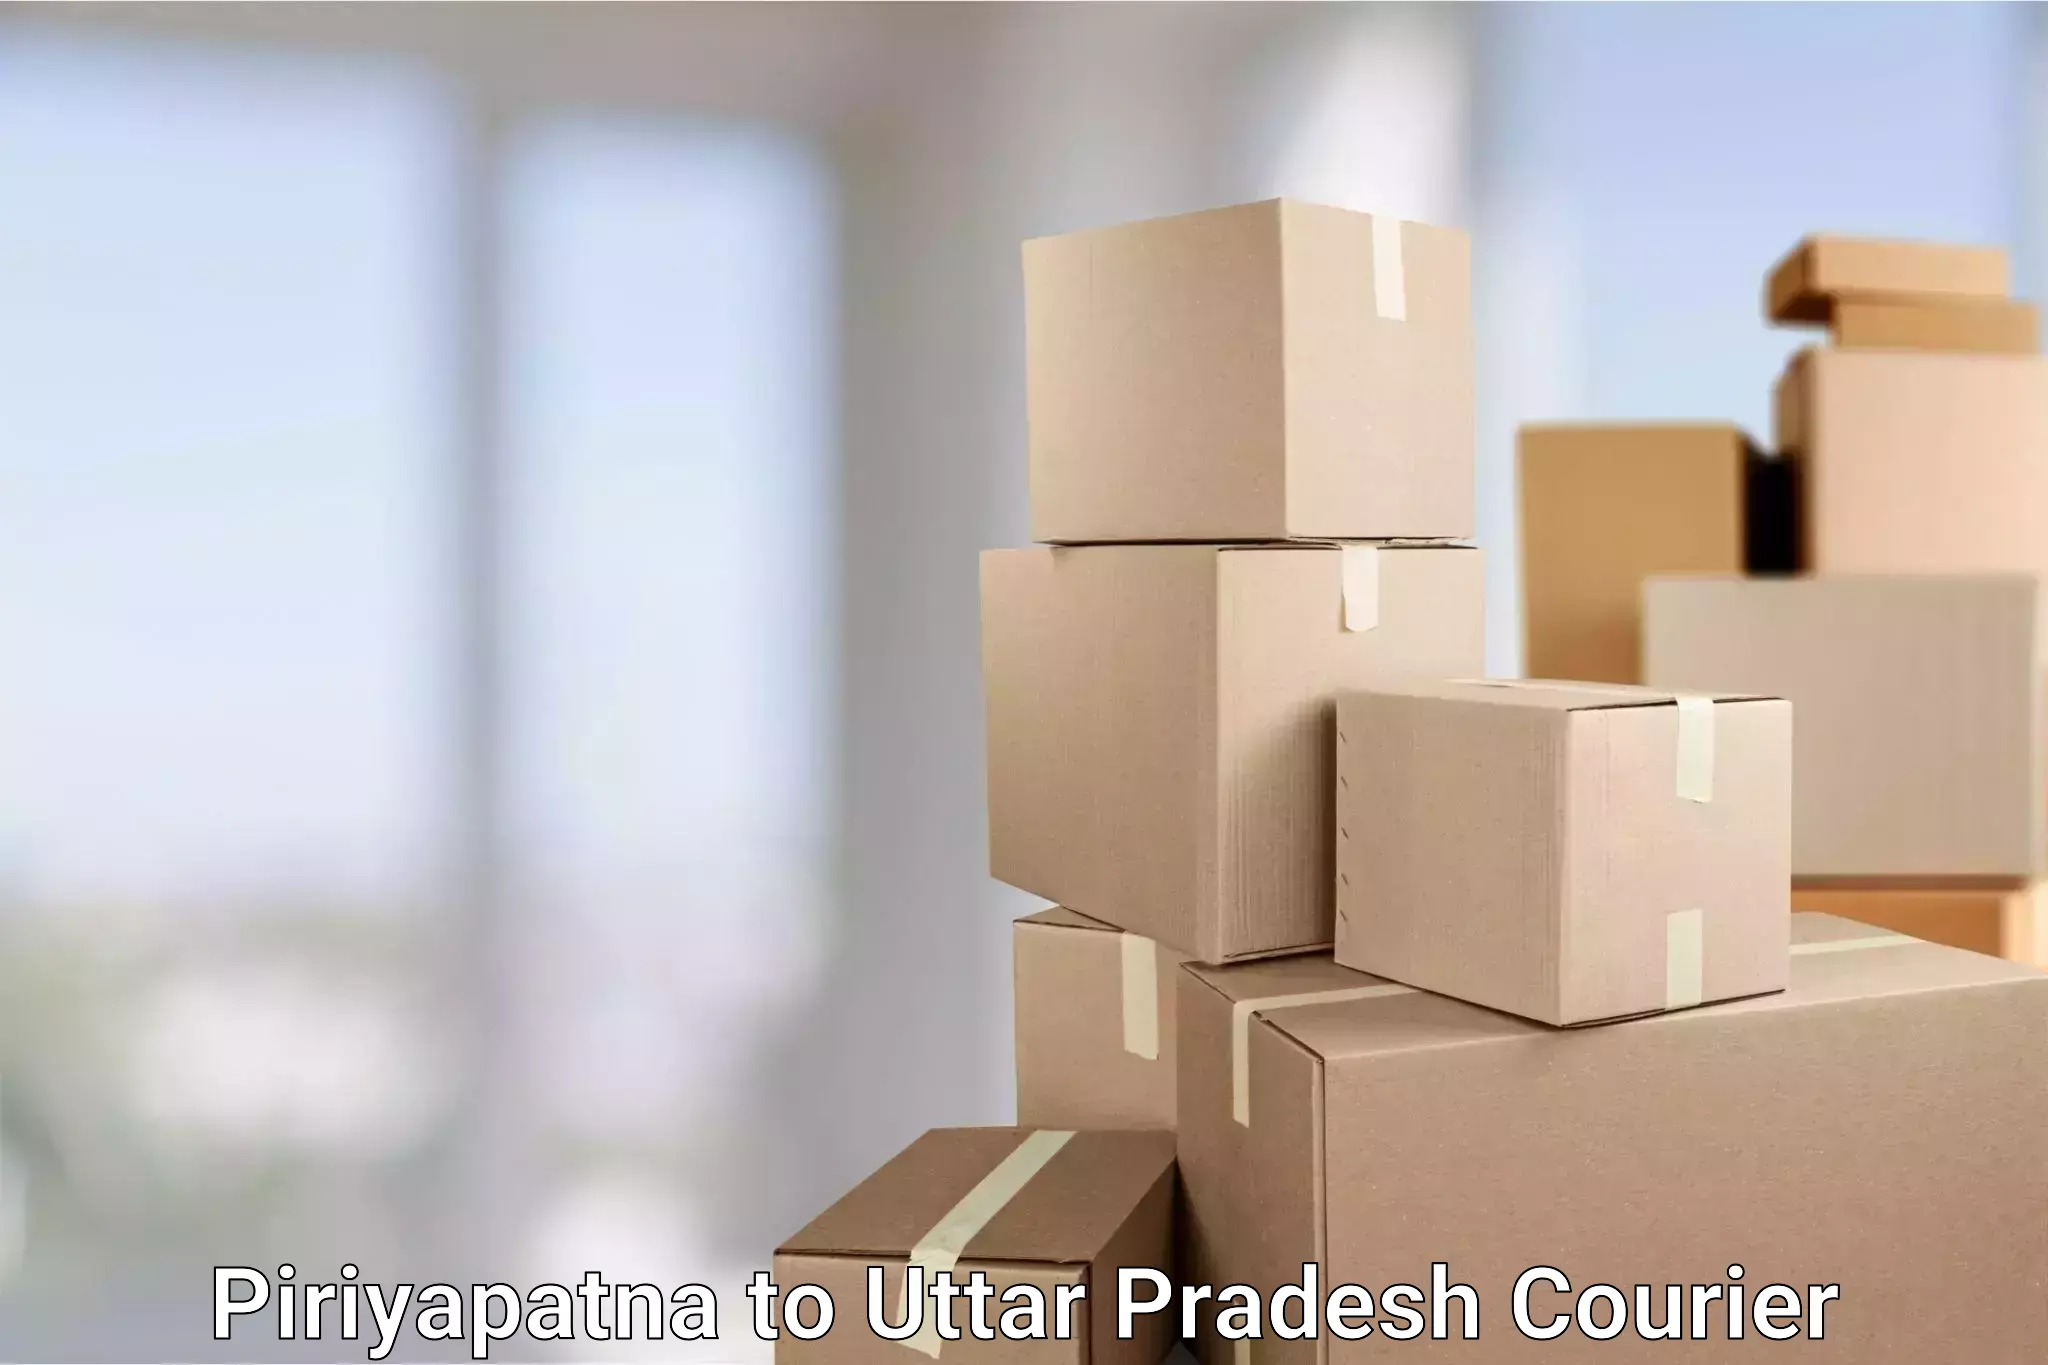 Residential courier service Piriyapatna to Lakhimpur Kheri